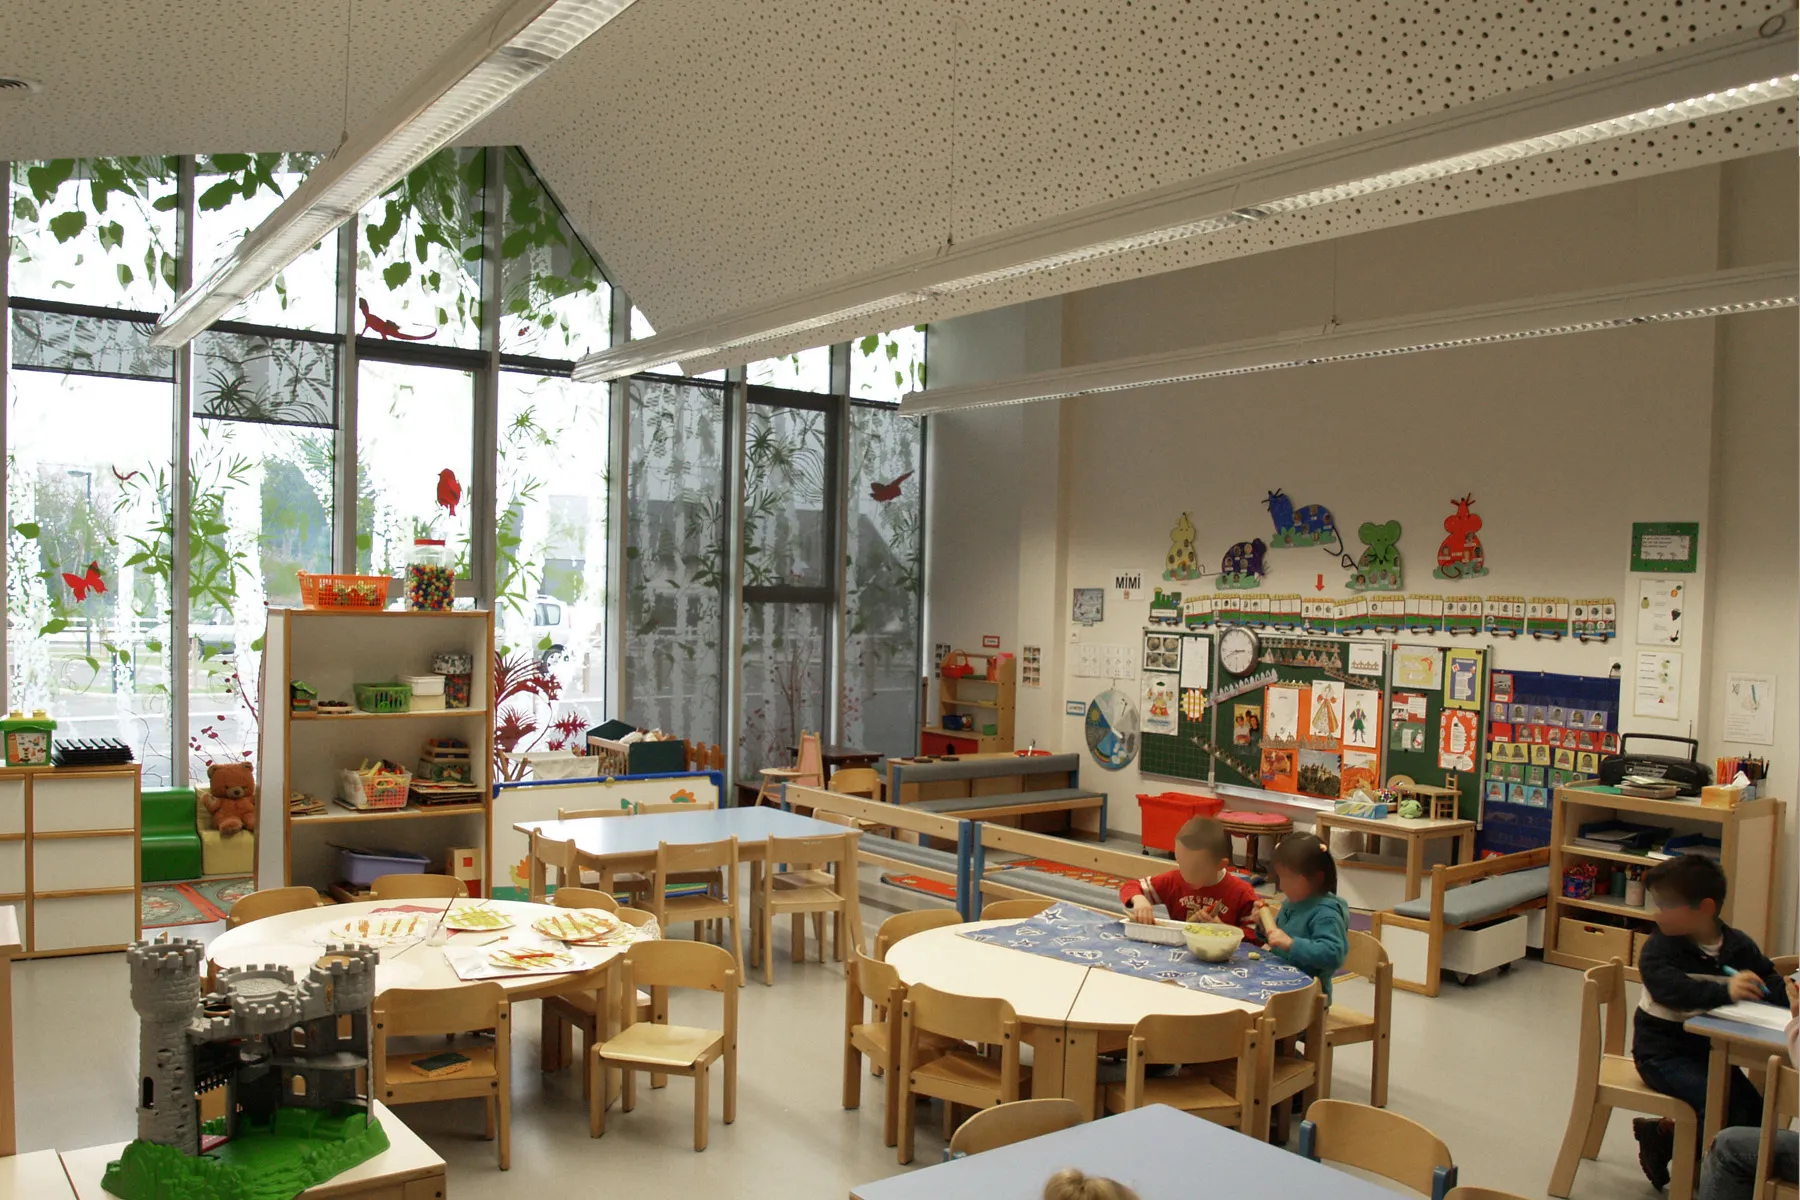 Оформление группы в детском саду с панорамным окном